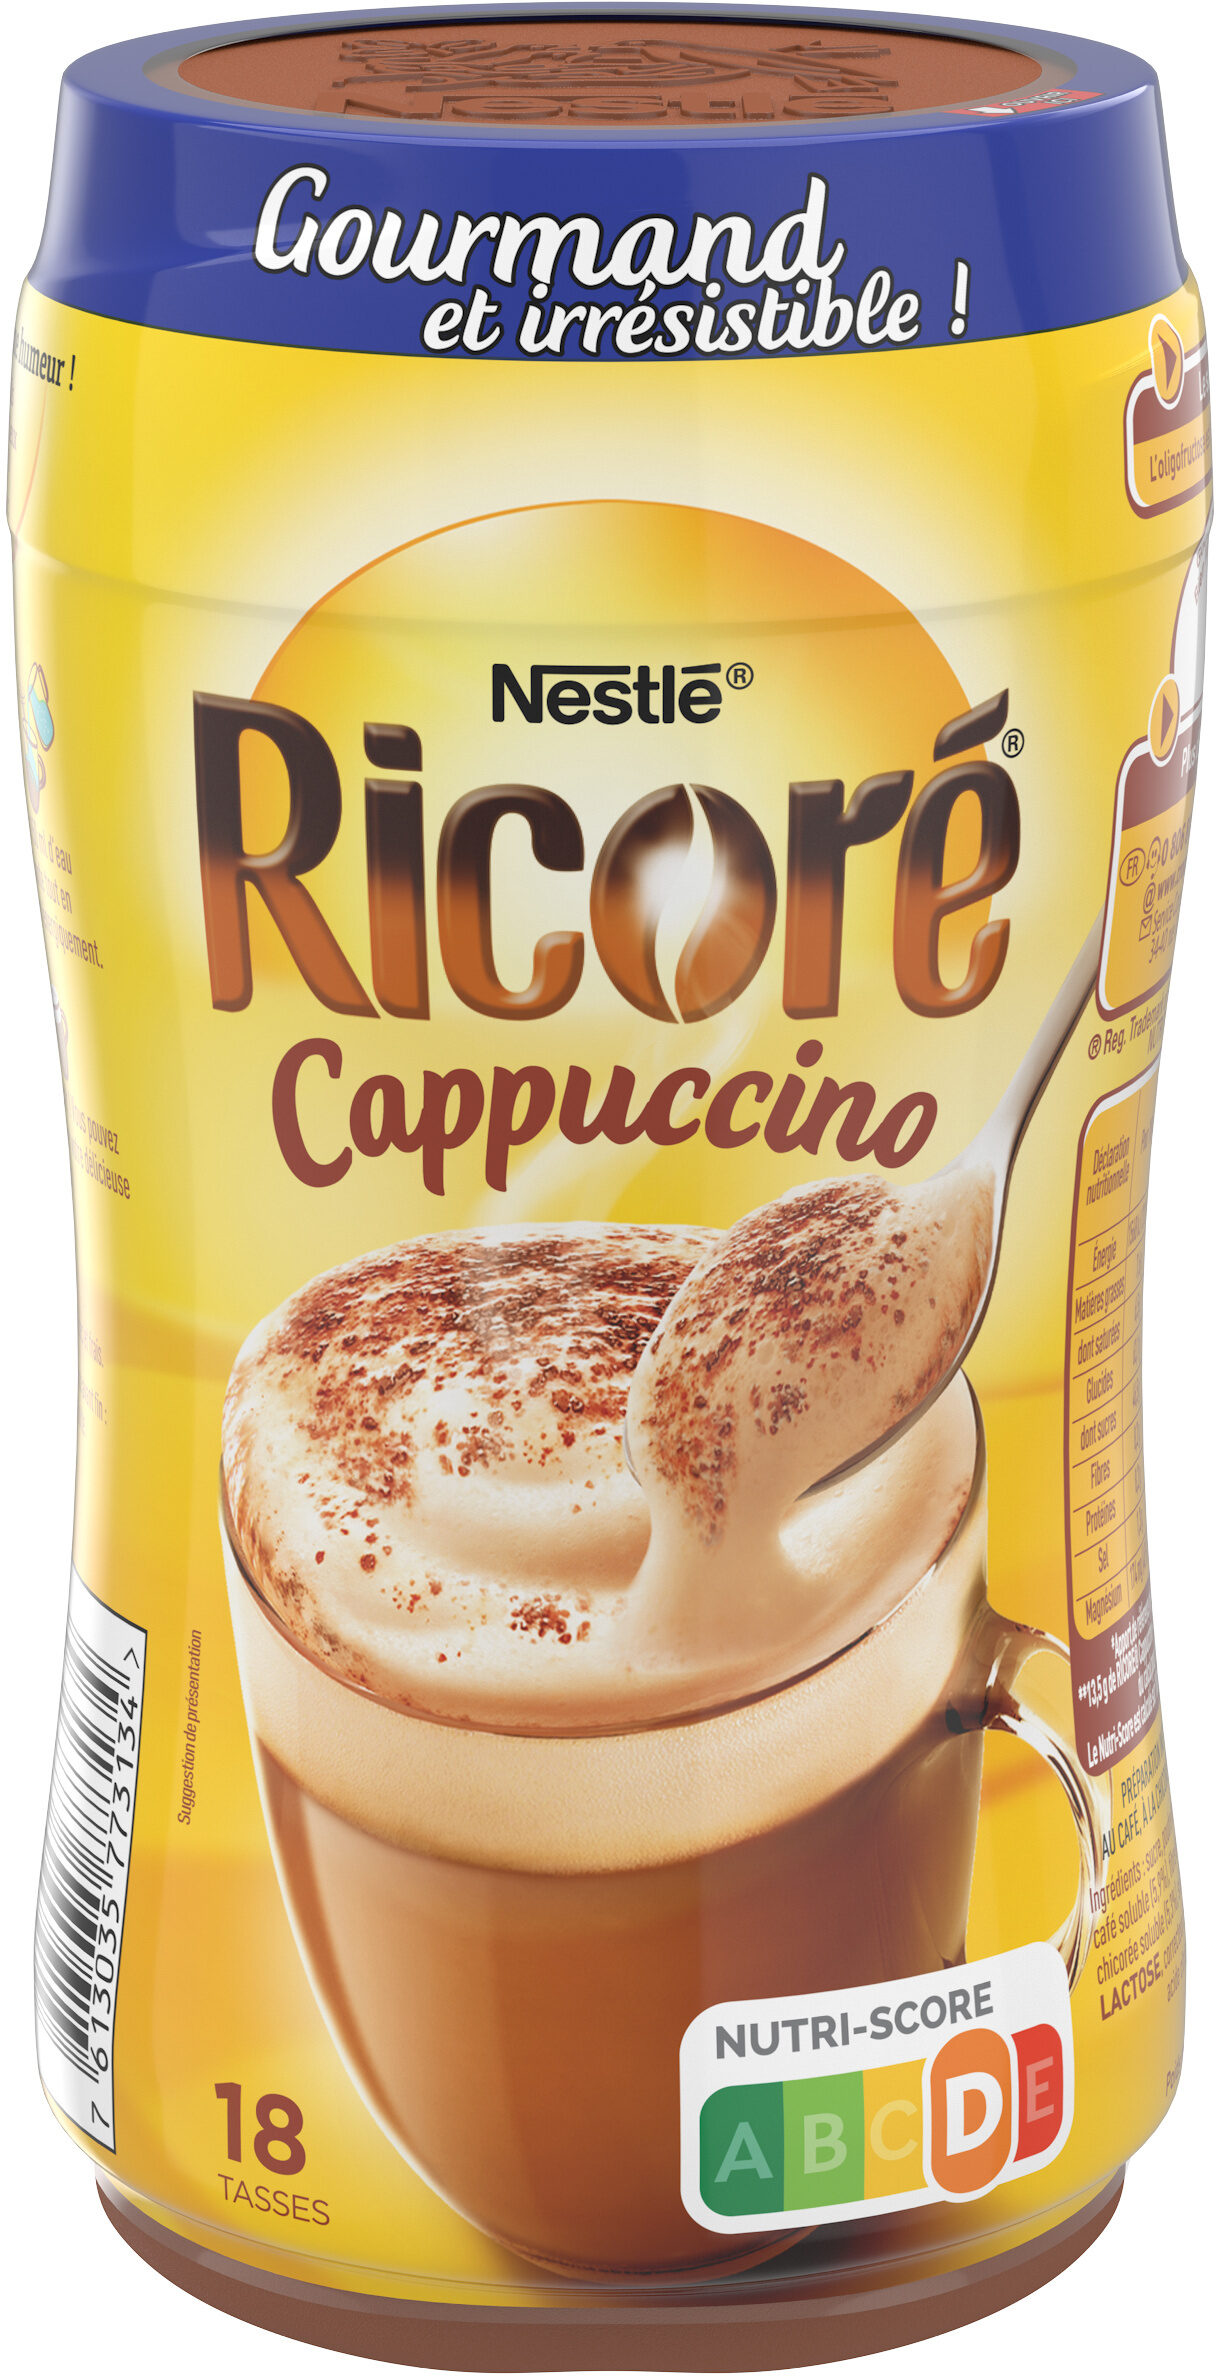 Ricoré Cappuccino en boite de 243g par Nestlé